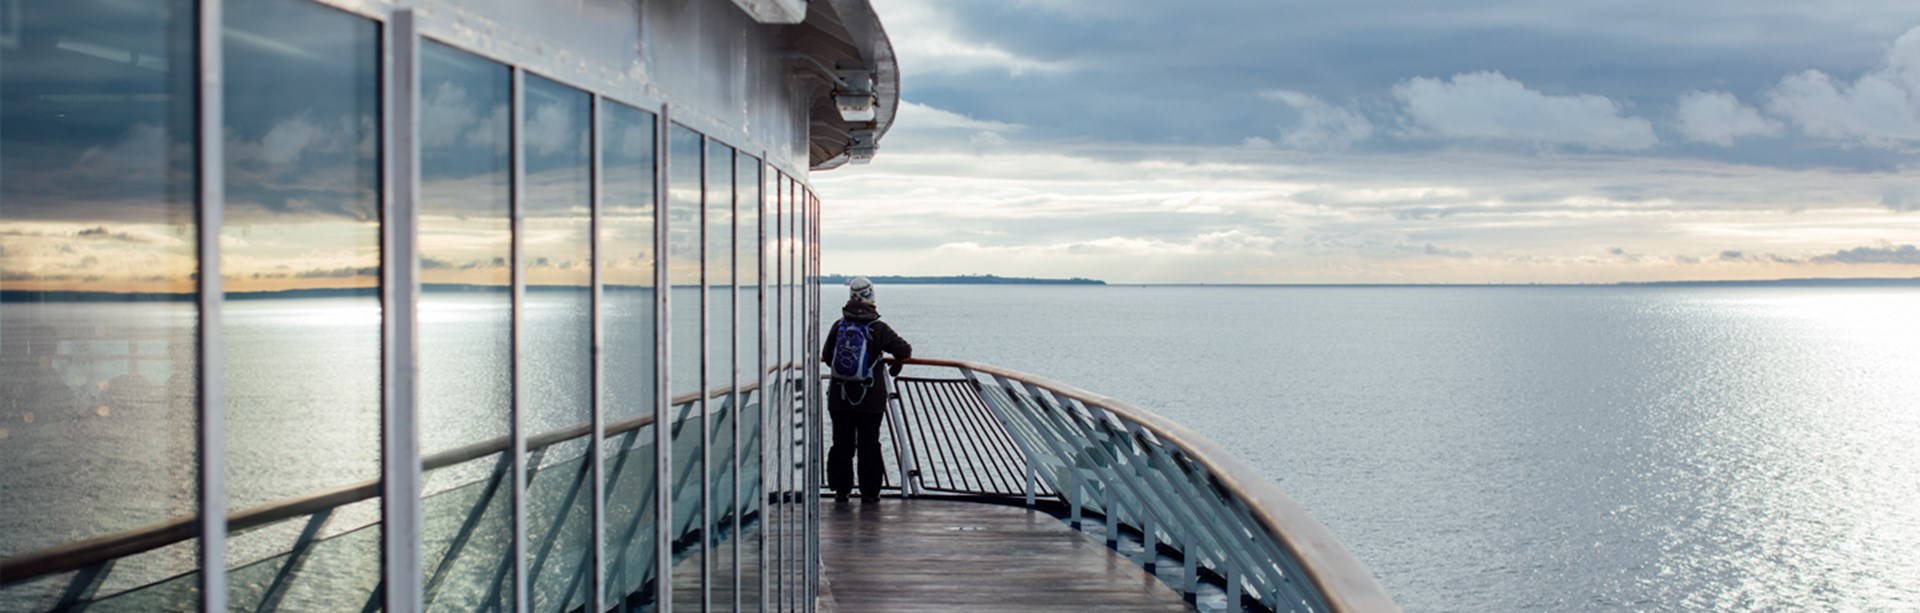 Medlemsrabatt för M Sveriges medlemmar på ForSea Ferries